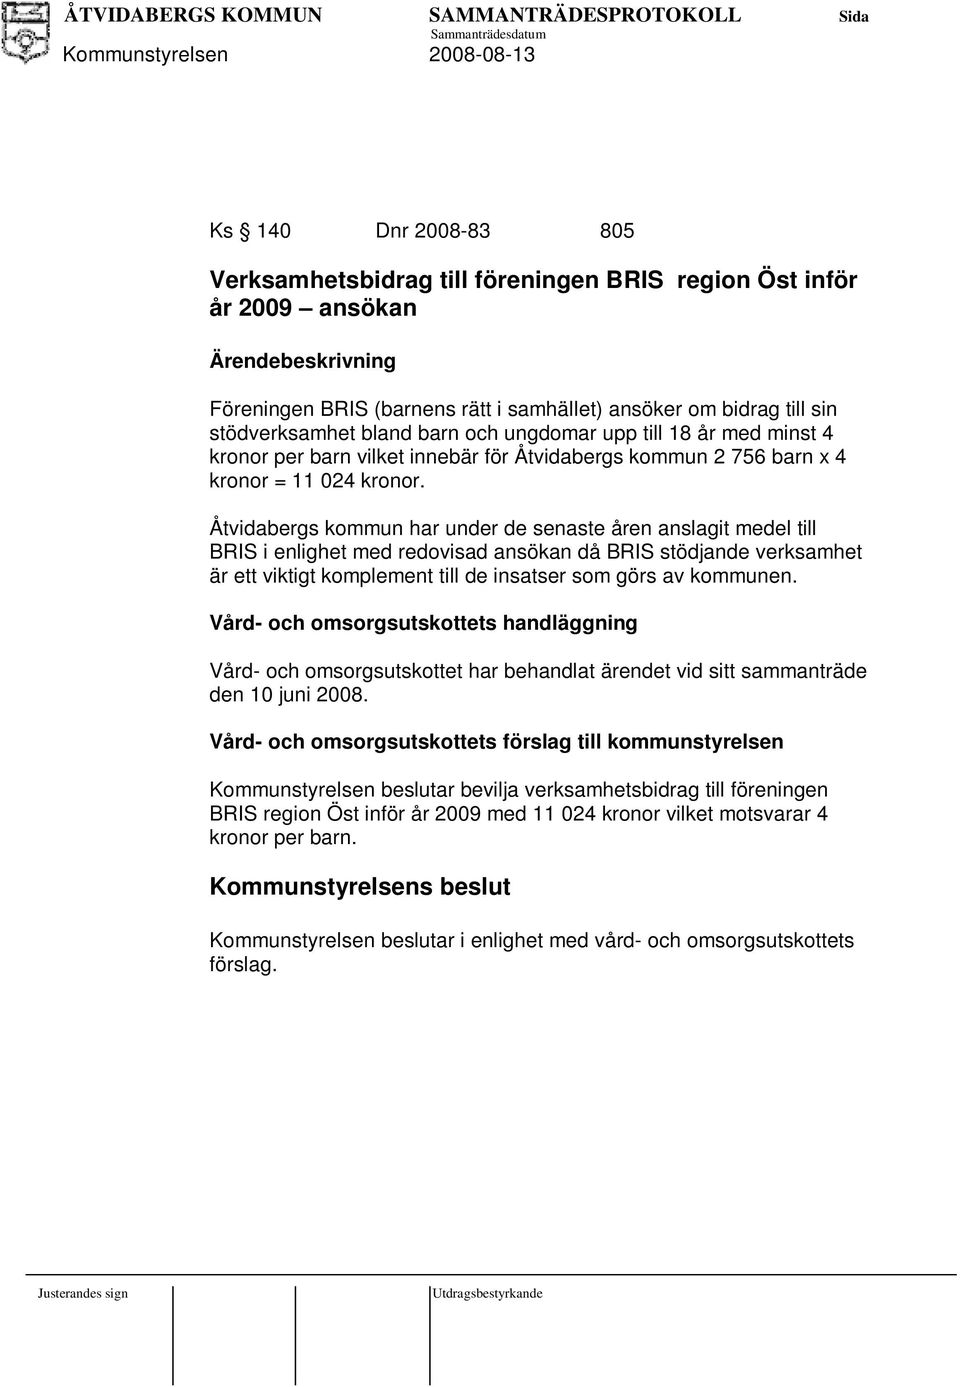 Åtvidabergs kommun har under de senaste åren anslagit medel till BRIS i enlighet med redovisad ansökan då BRIS stödjande verksamhet är ett viktigt komplement till de insatser som görs av kommunen.